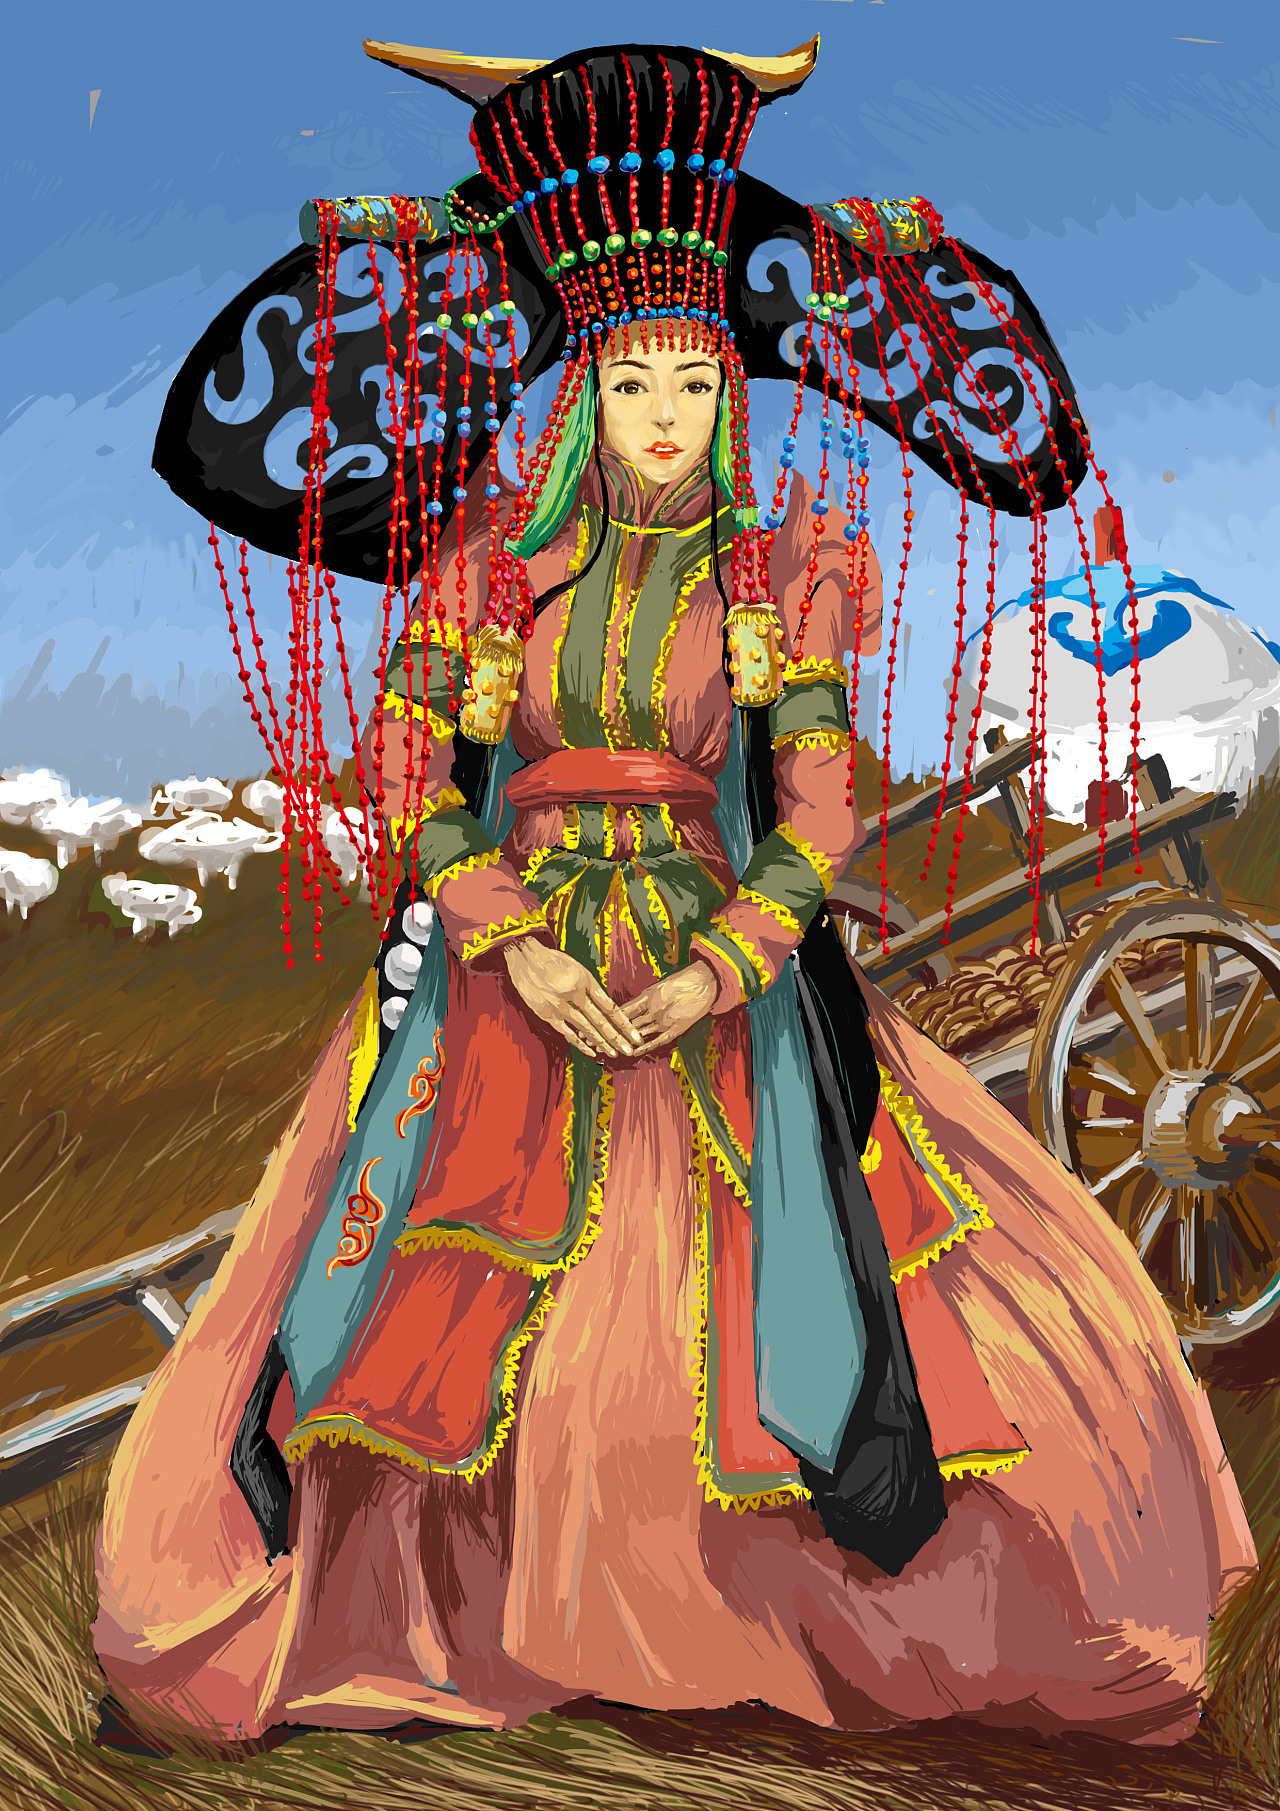 画《成吉思汗》的蒙古国卡通绘本漫画家-草原元素---蒙古元素 Mongolia Elements